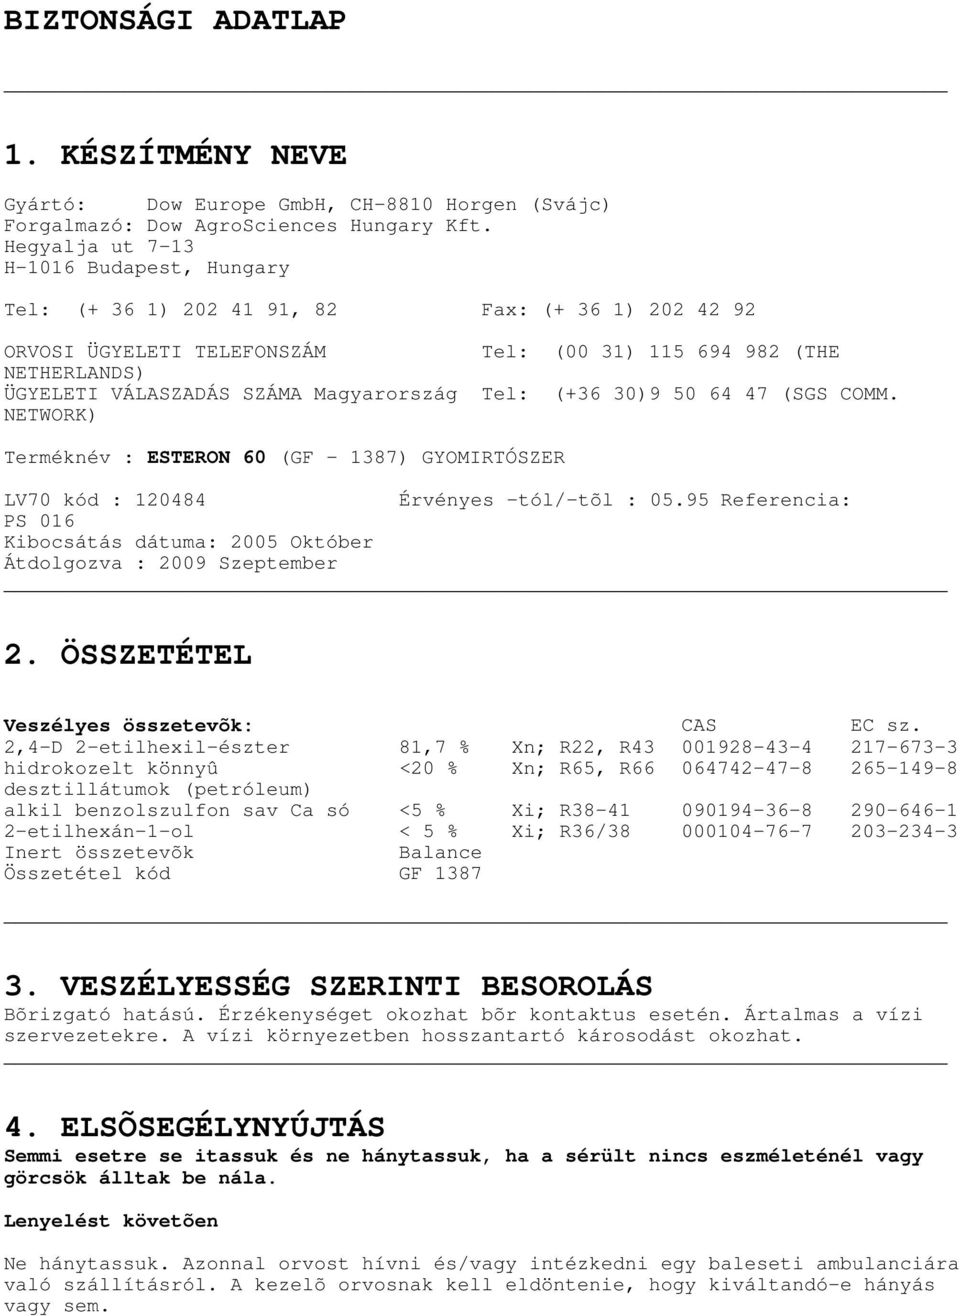 Magyarország Tel: (+36 30)9 50 64 47 (SGS COMM. NETWORK) Terméknév : ESTERON 60 (GF 1387) GYOMIRTÓSZER LV70 kód : 120484 Érvényes -tól/-tõl : 05.